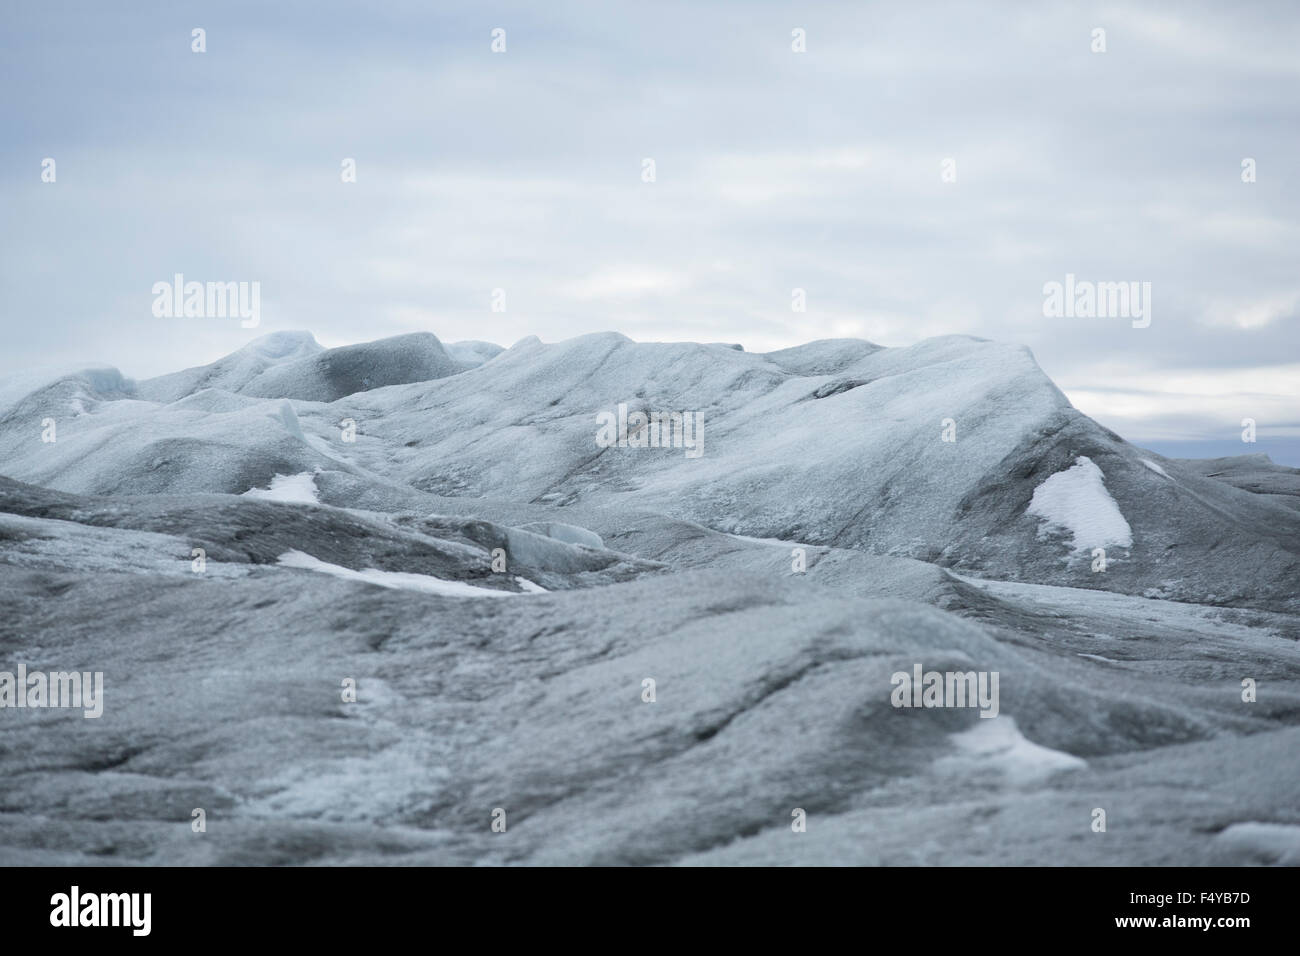 La Groenlandia, Qeqqata, Kangerlussuaq. Dettaglio della Groenlandia lastra di ghiaccio. Foto Stock